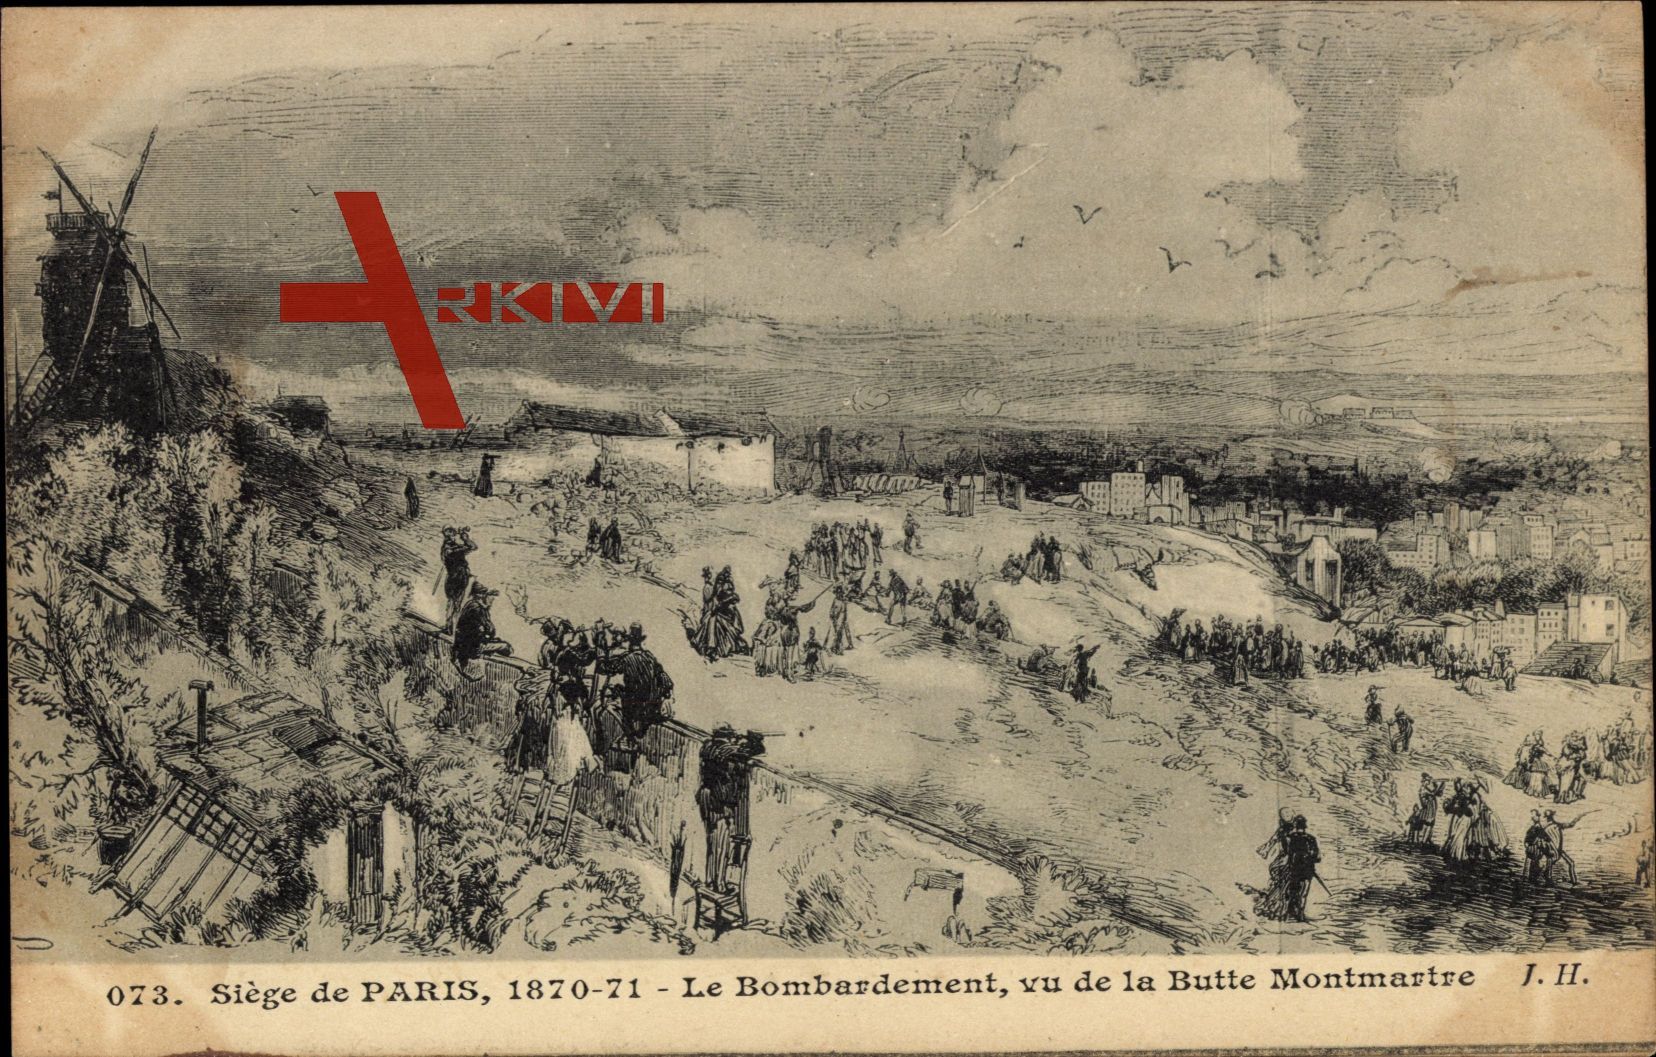 Siége de Paris, 1870 - 71, Bombardement, vue de la Butte Montmartre